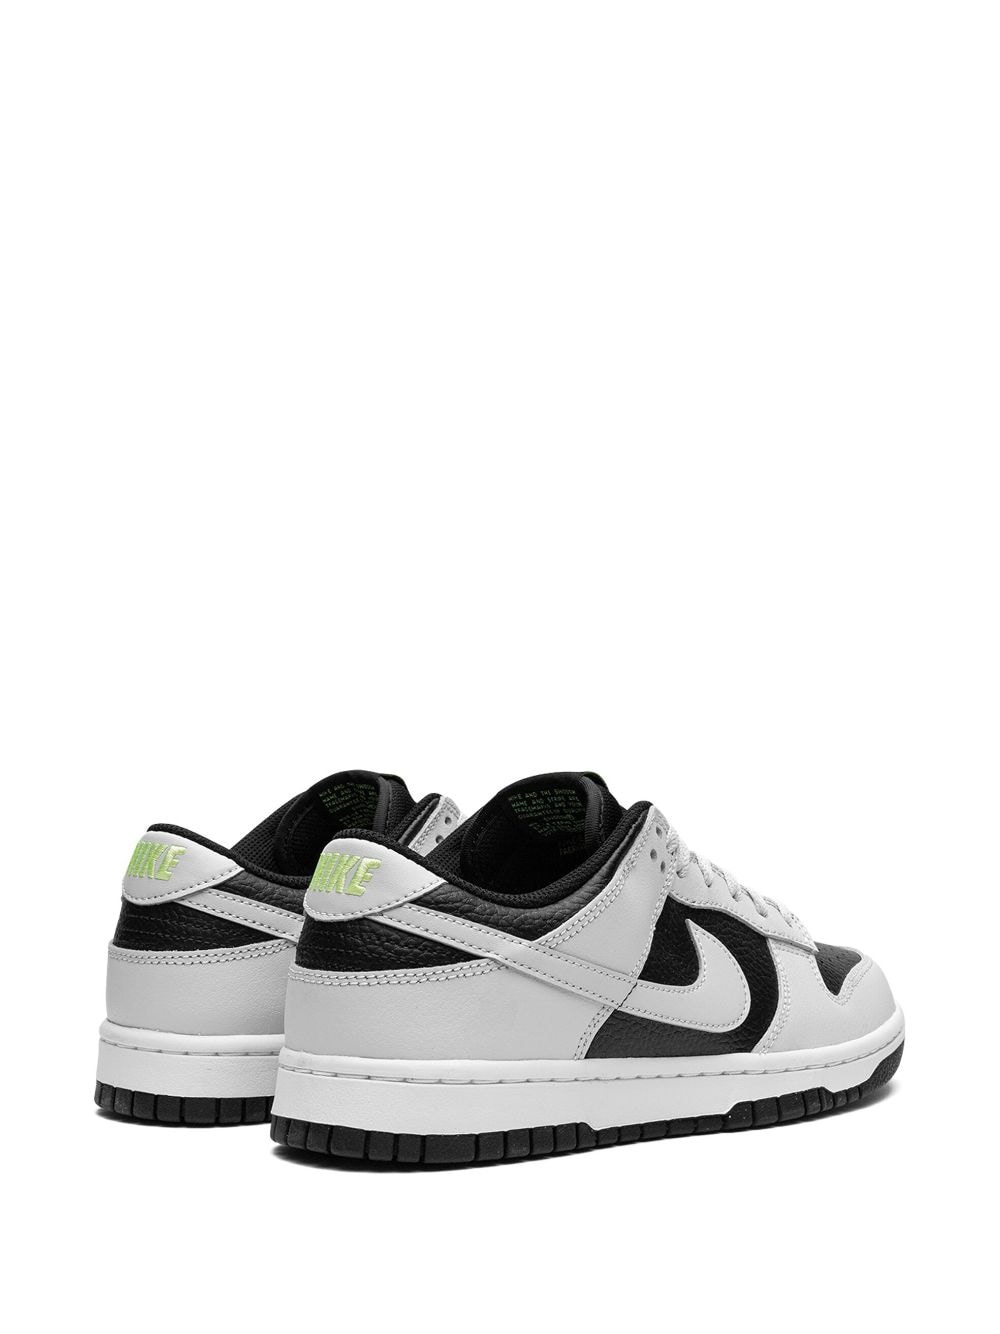 Shop Nike Dunk Low "black/photon Dust-volt-white" Sneakers